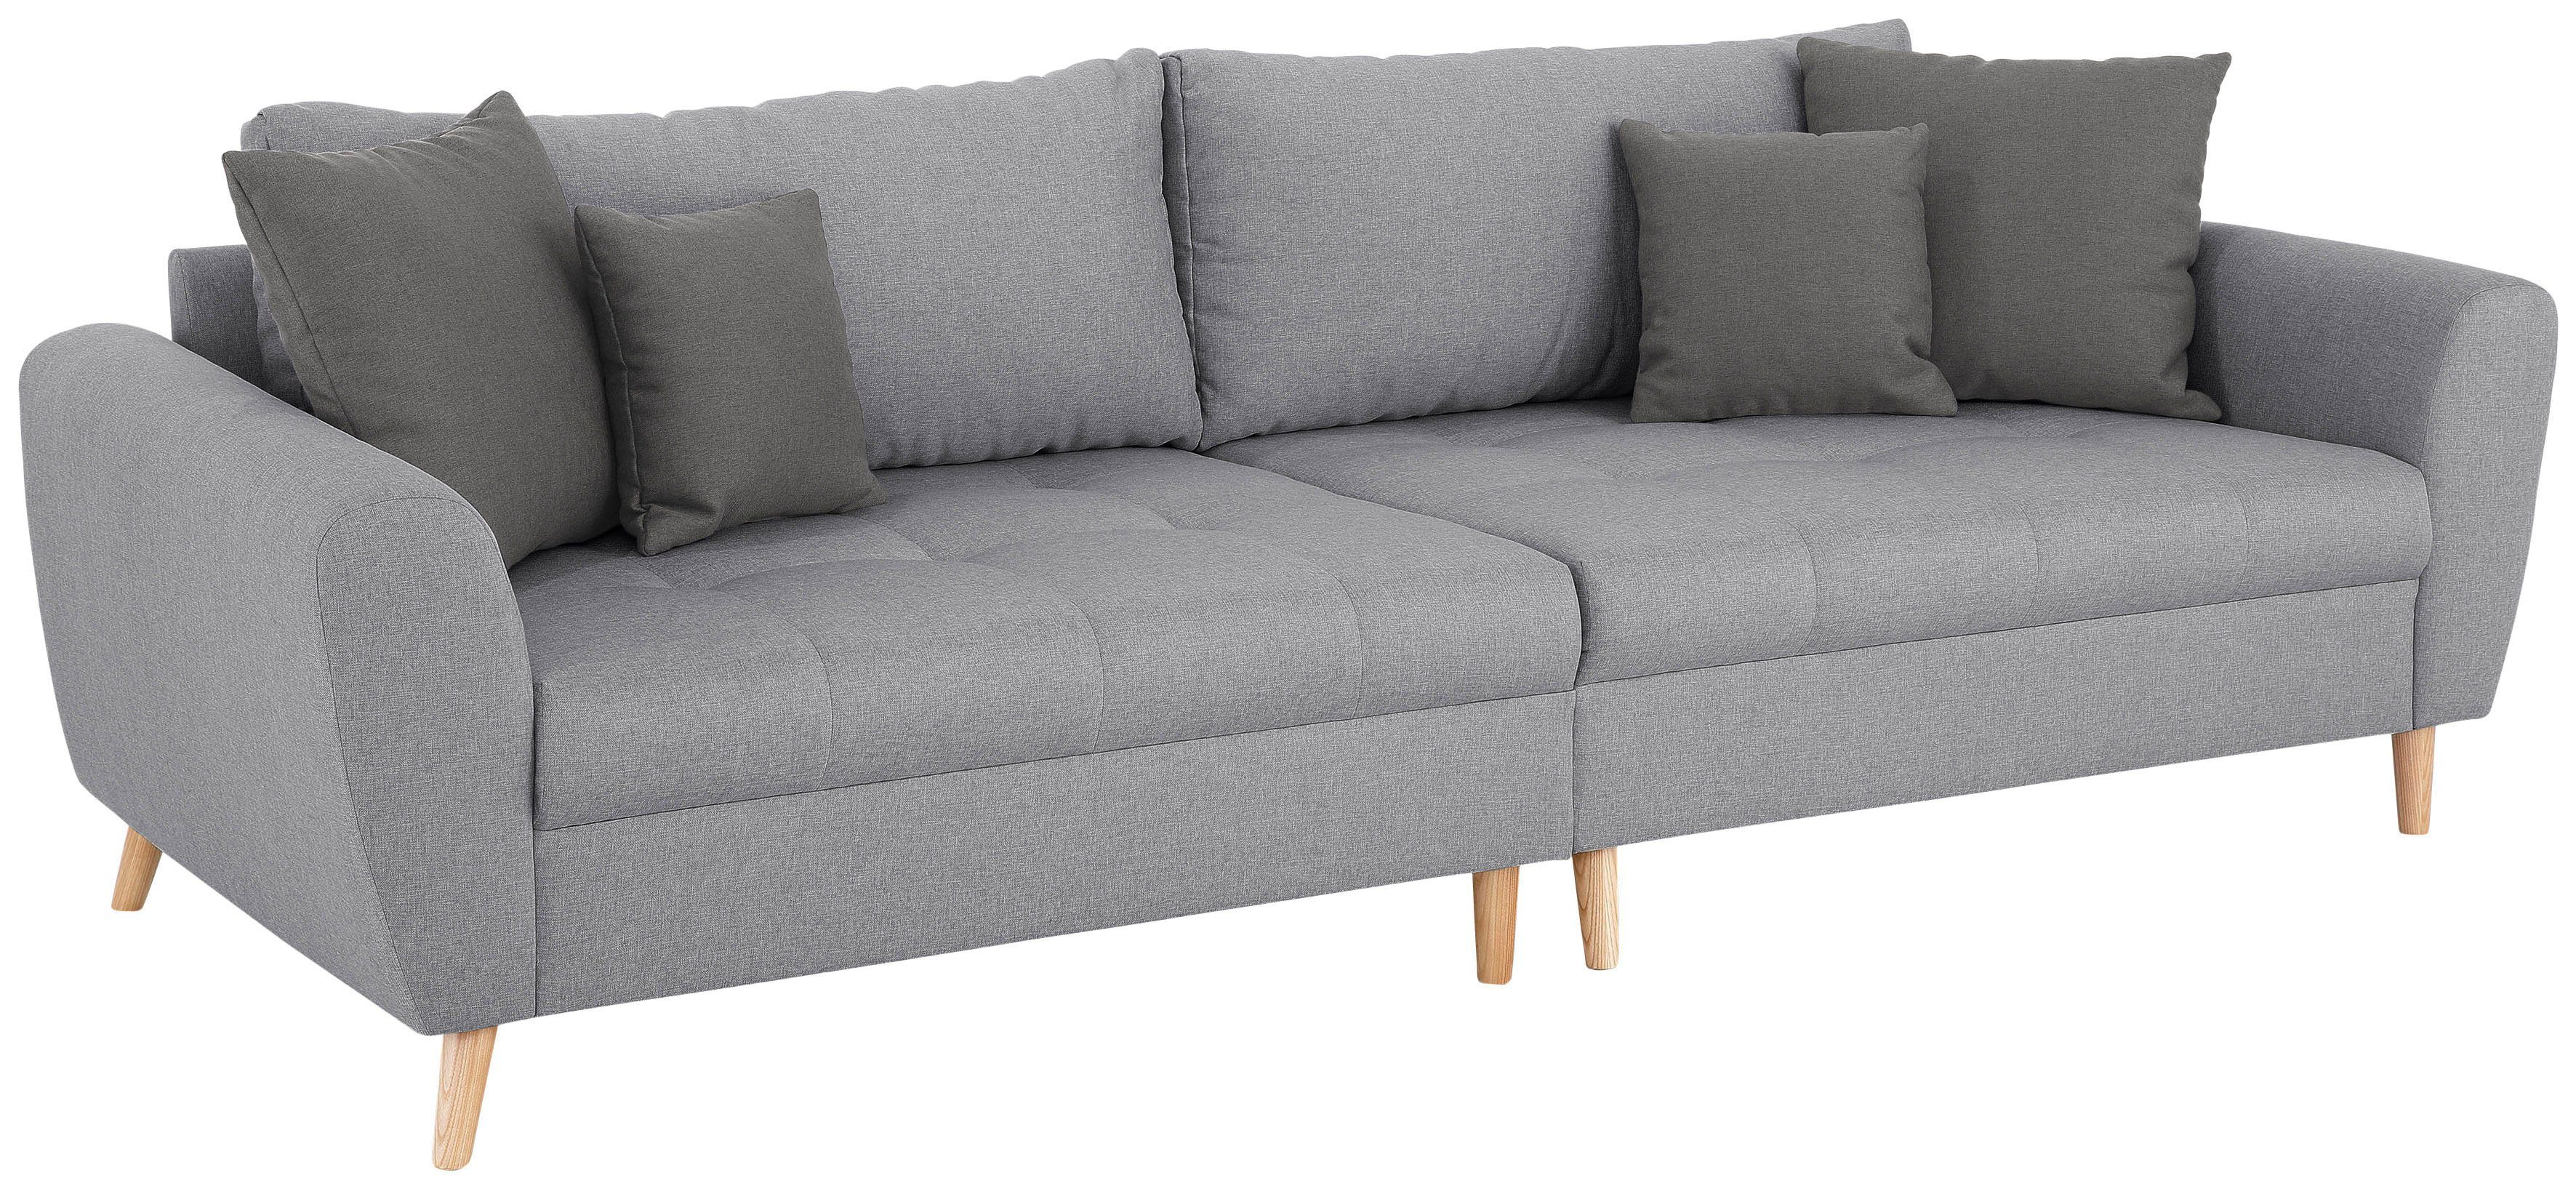 Home affaire Big-Sofa »Penelope Luxus«, mit besonders hochwertiger  Polsterung für bis zu 140 kg pro Sitzfläche